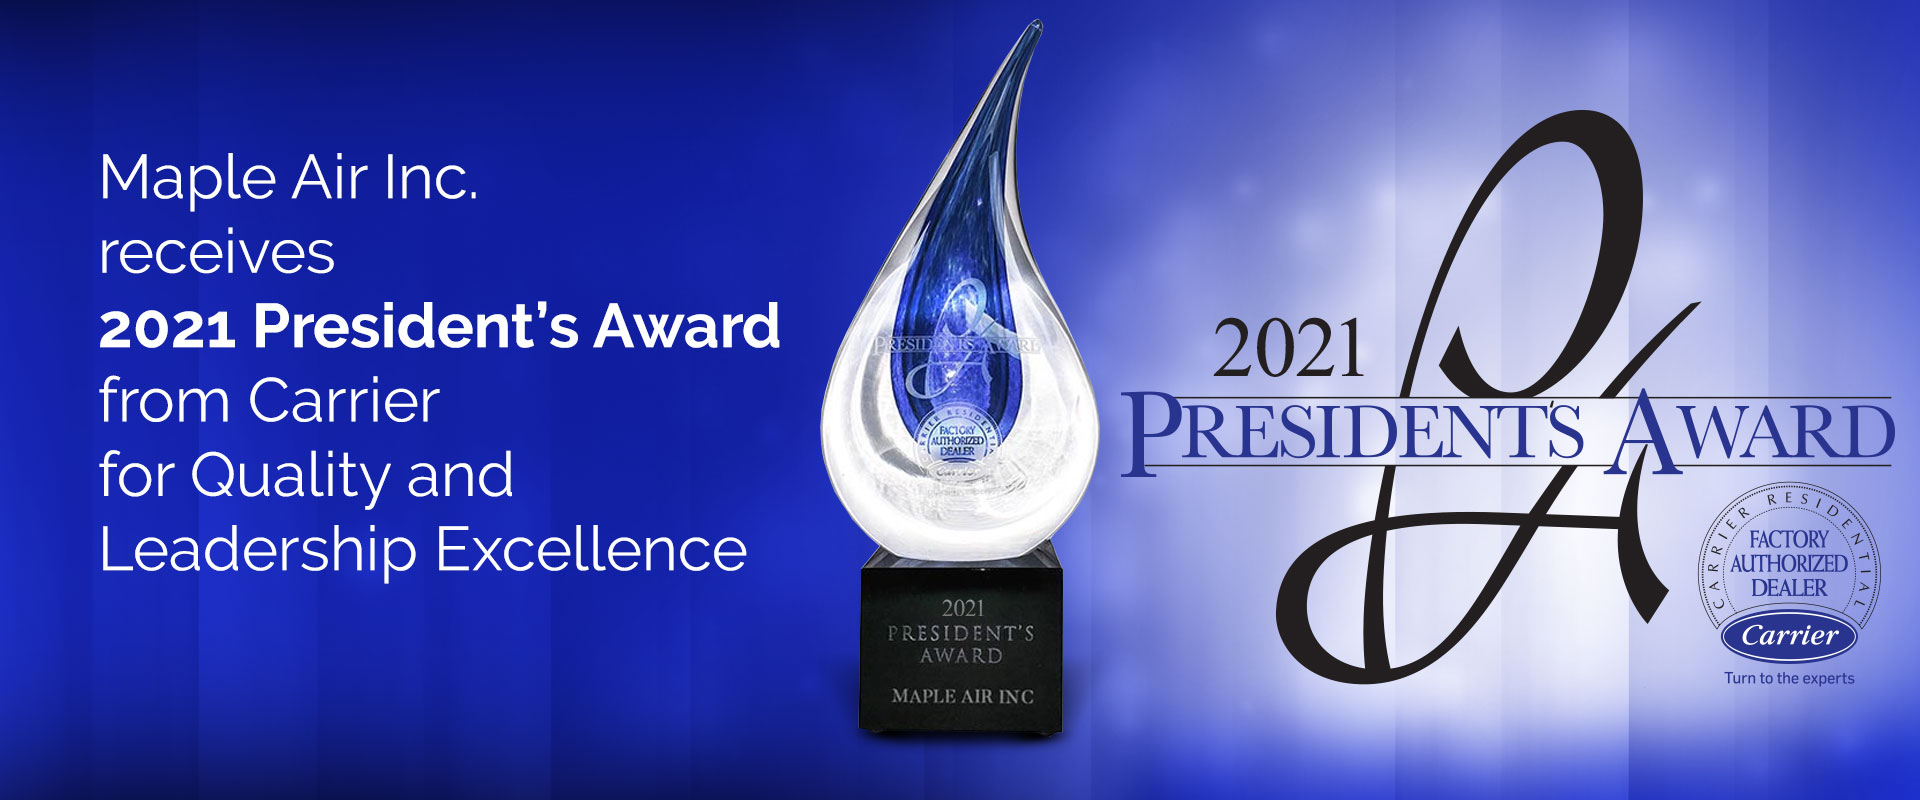 Carrier presidents Award 2020 winner